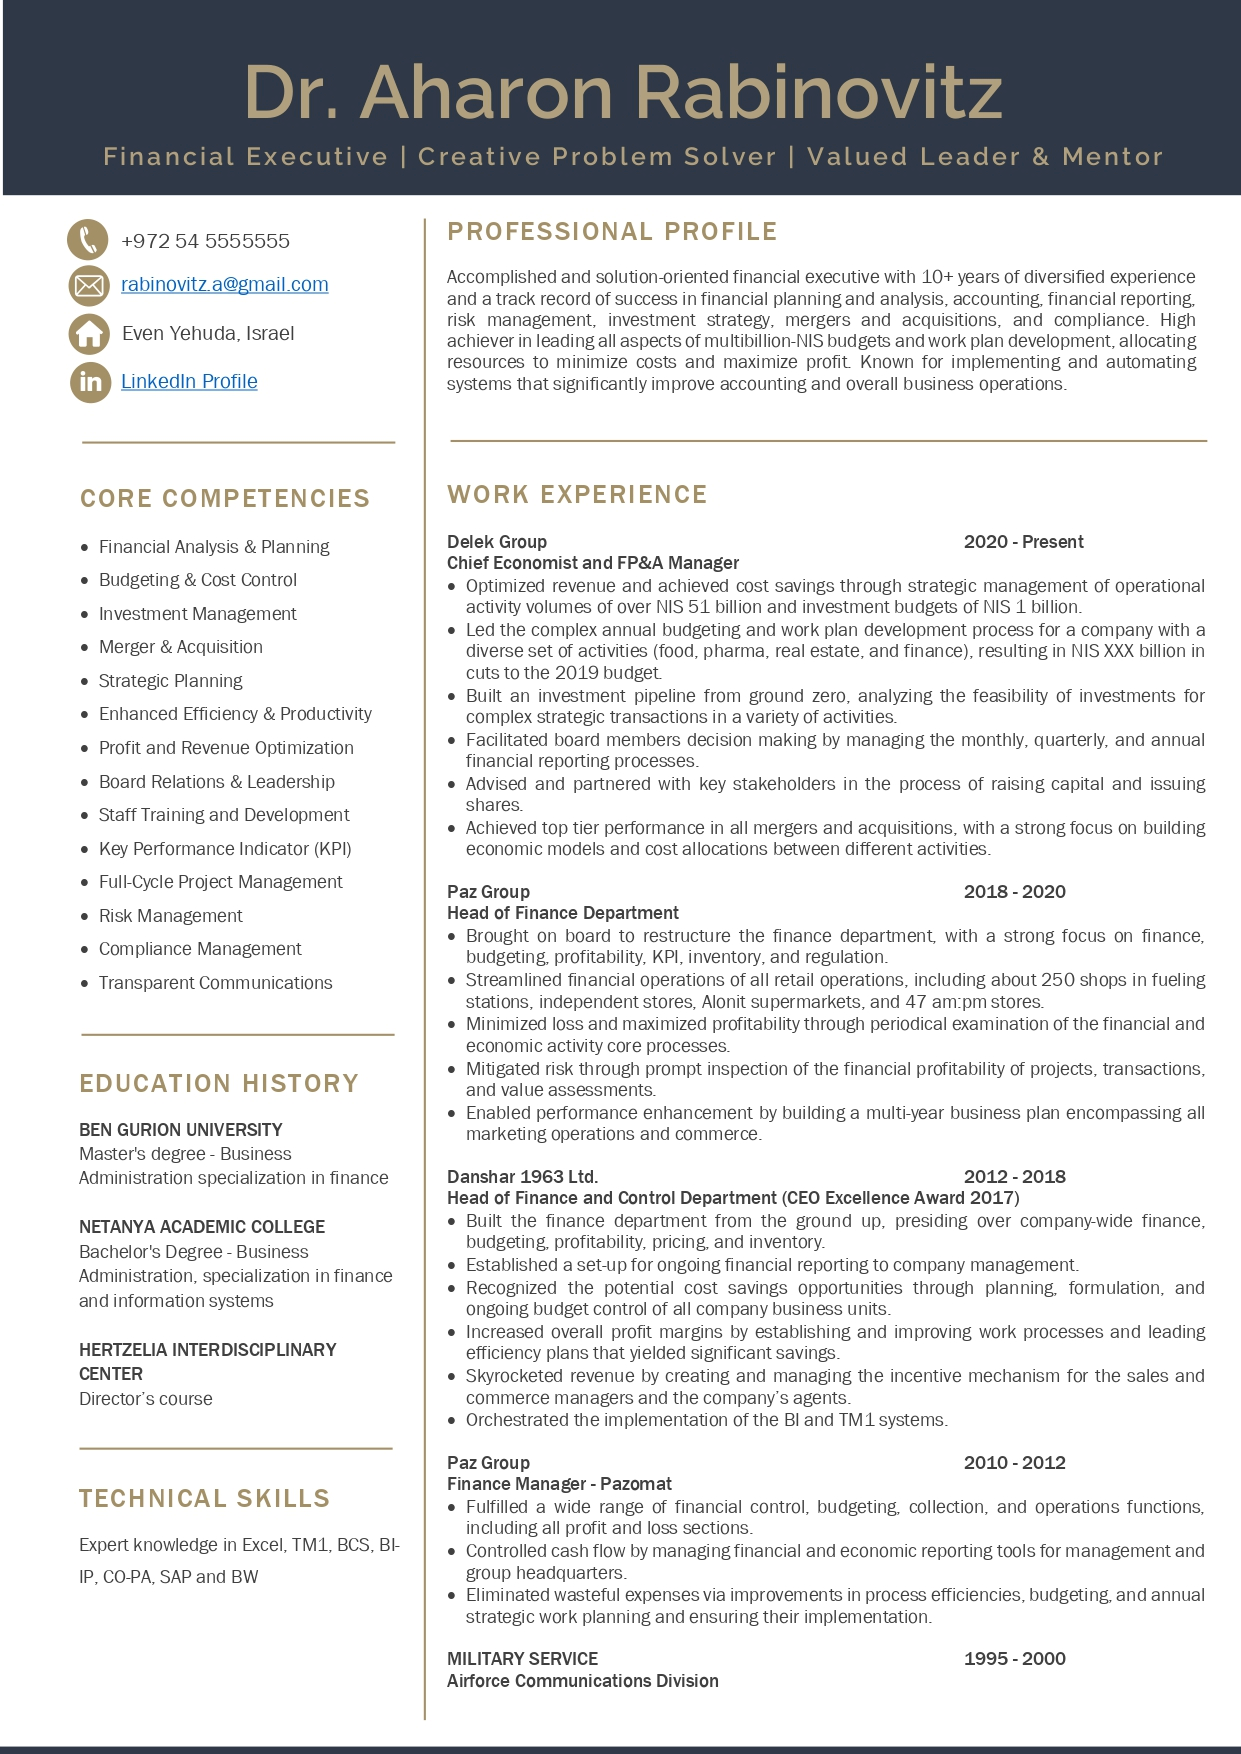 aharon-rabinobitz-resume-after-page-0001-1